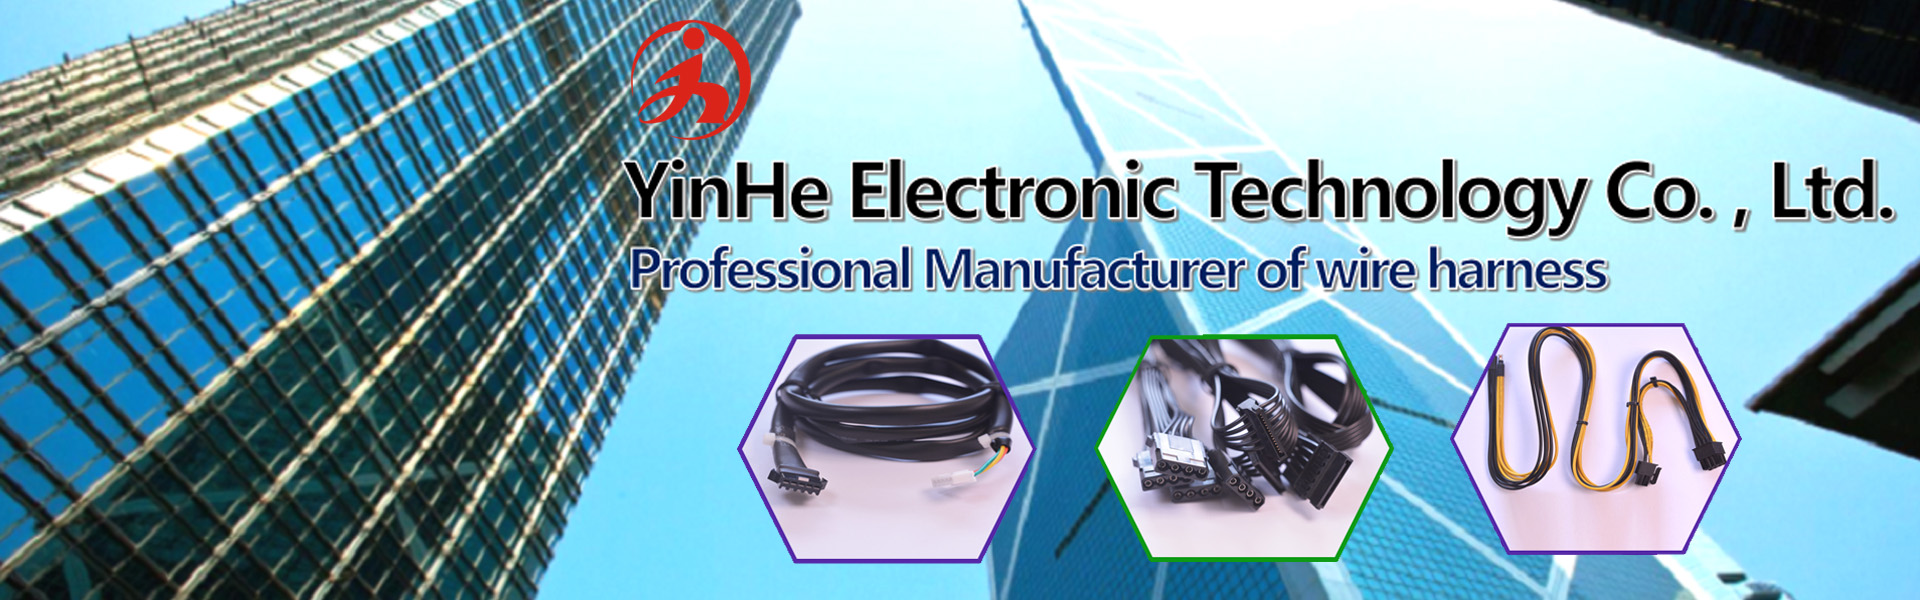 Arnês de fios, conector de deslocamento de isolamento, conjunto de cabos,YinHe (DongGuan) Electronic Technology Co., LTD